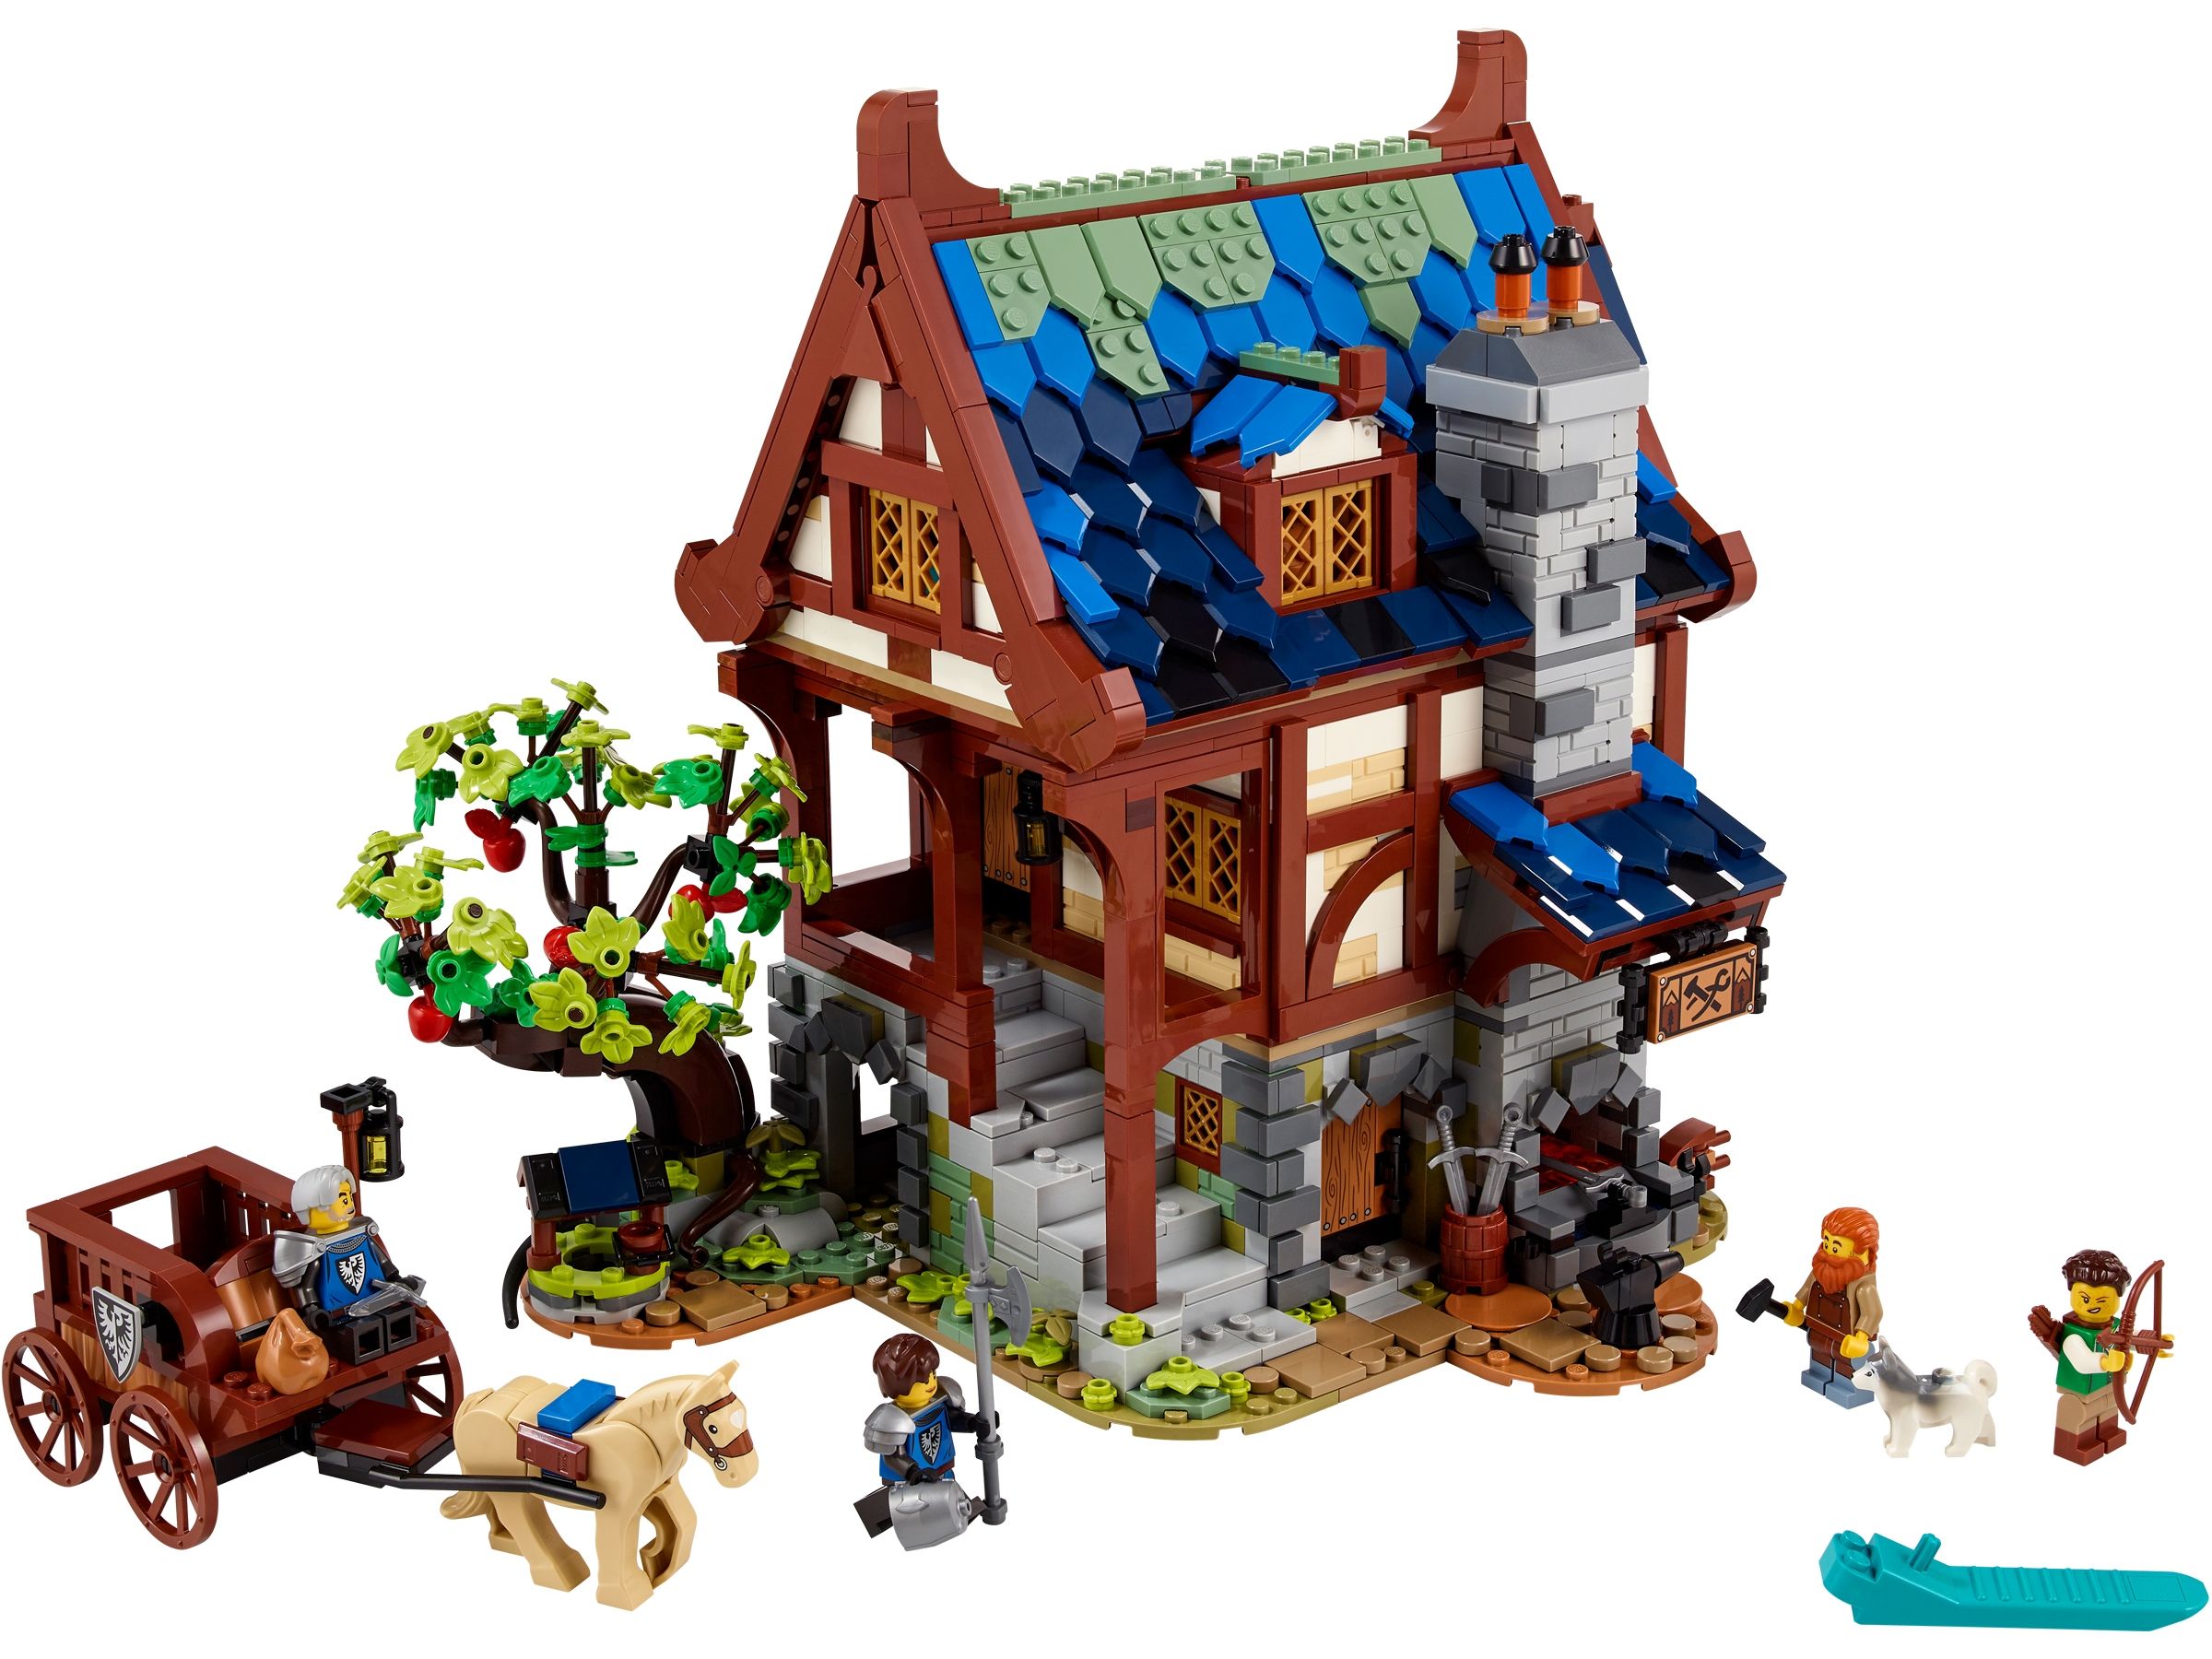 LEGO Ideas 21325 Mittelalterliche Schmiede LEGO_21325_Prod_2400.jpg